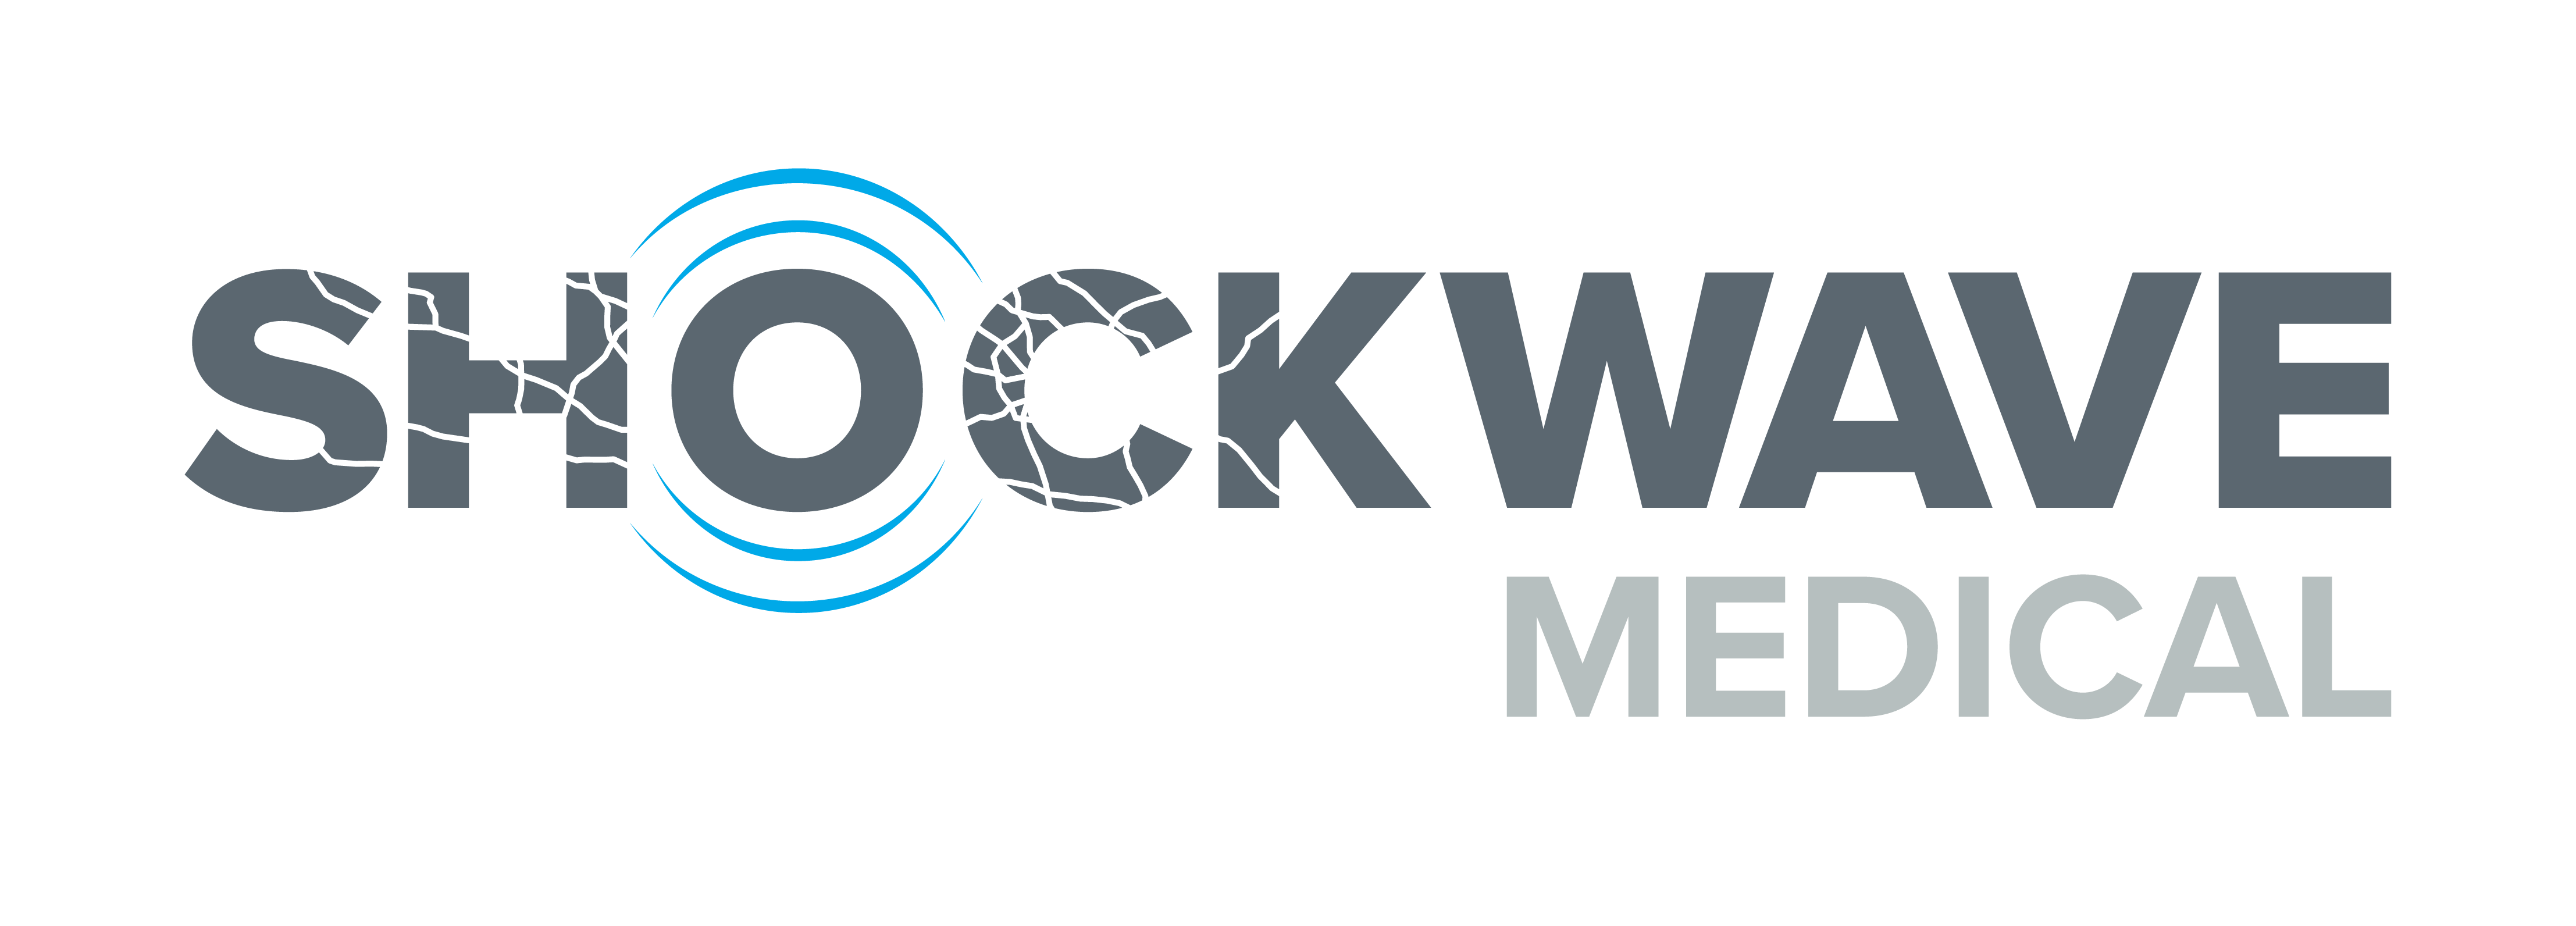 Shockwave Medical, Inc. Logo